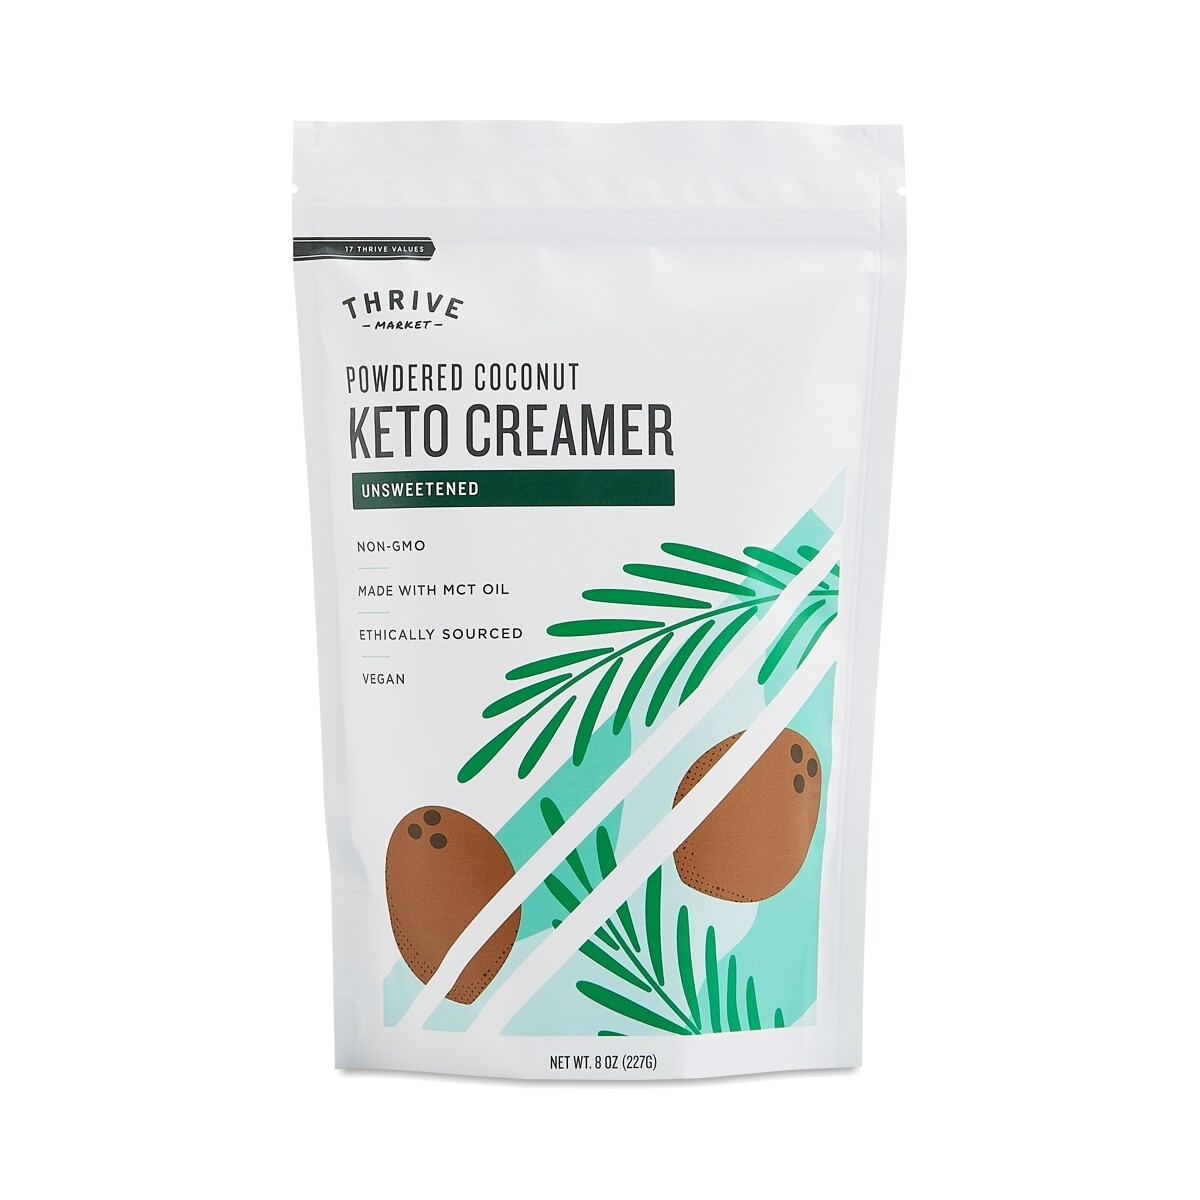 Powdered Coconut Keto Creamer